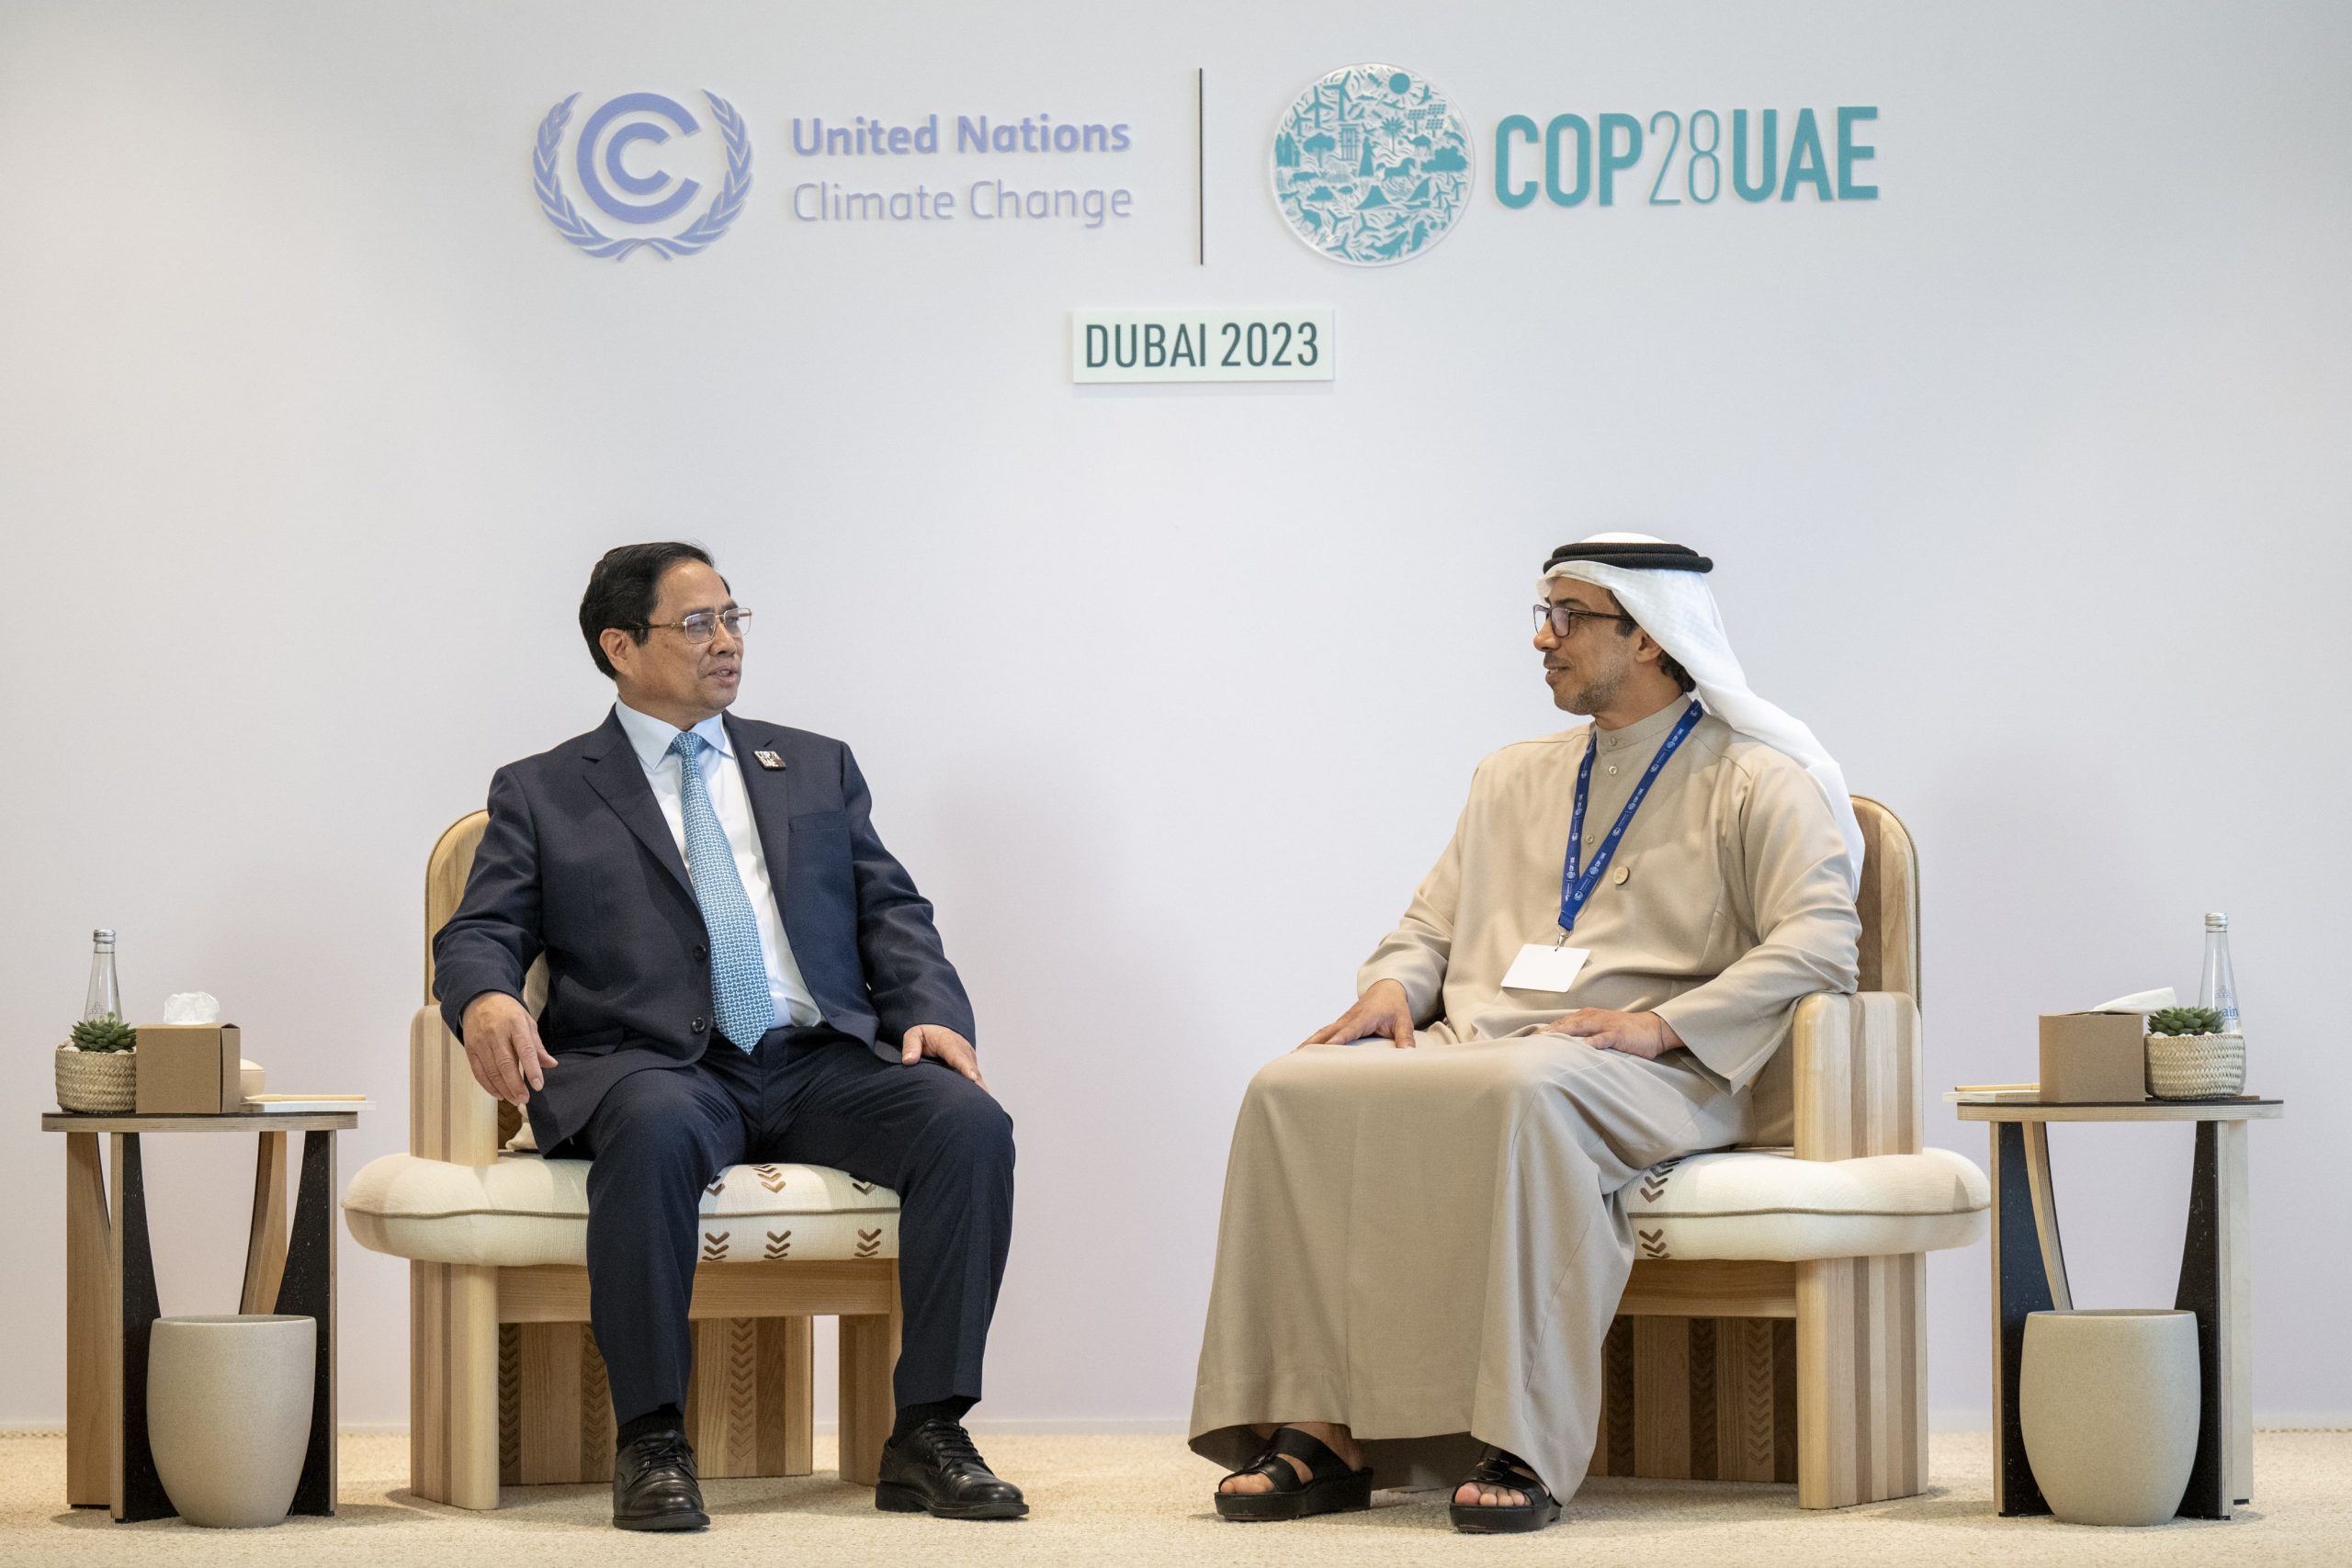 منصور بن زايد يبحث مع رئيس وزراء فيتنام على هامش “COP28” العلاقات الثنائية والقضايا ذات الاهتمام المشترك